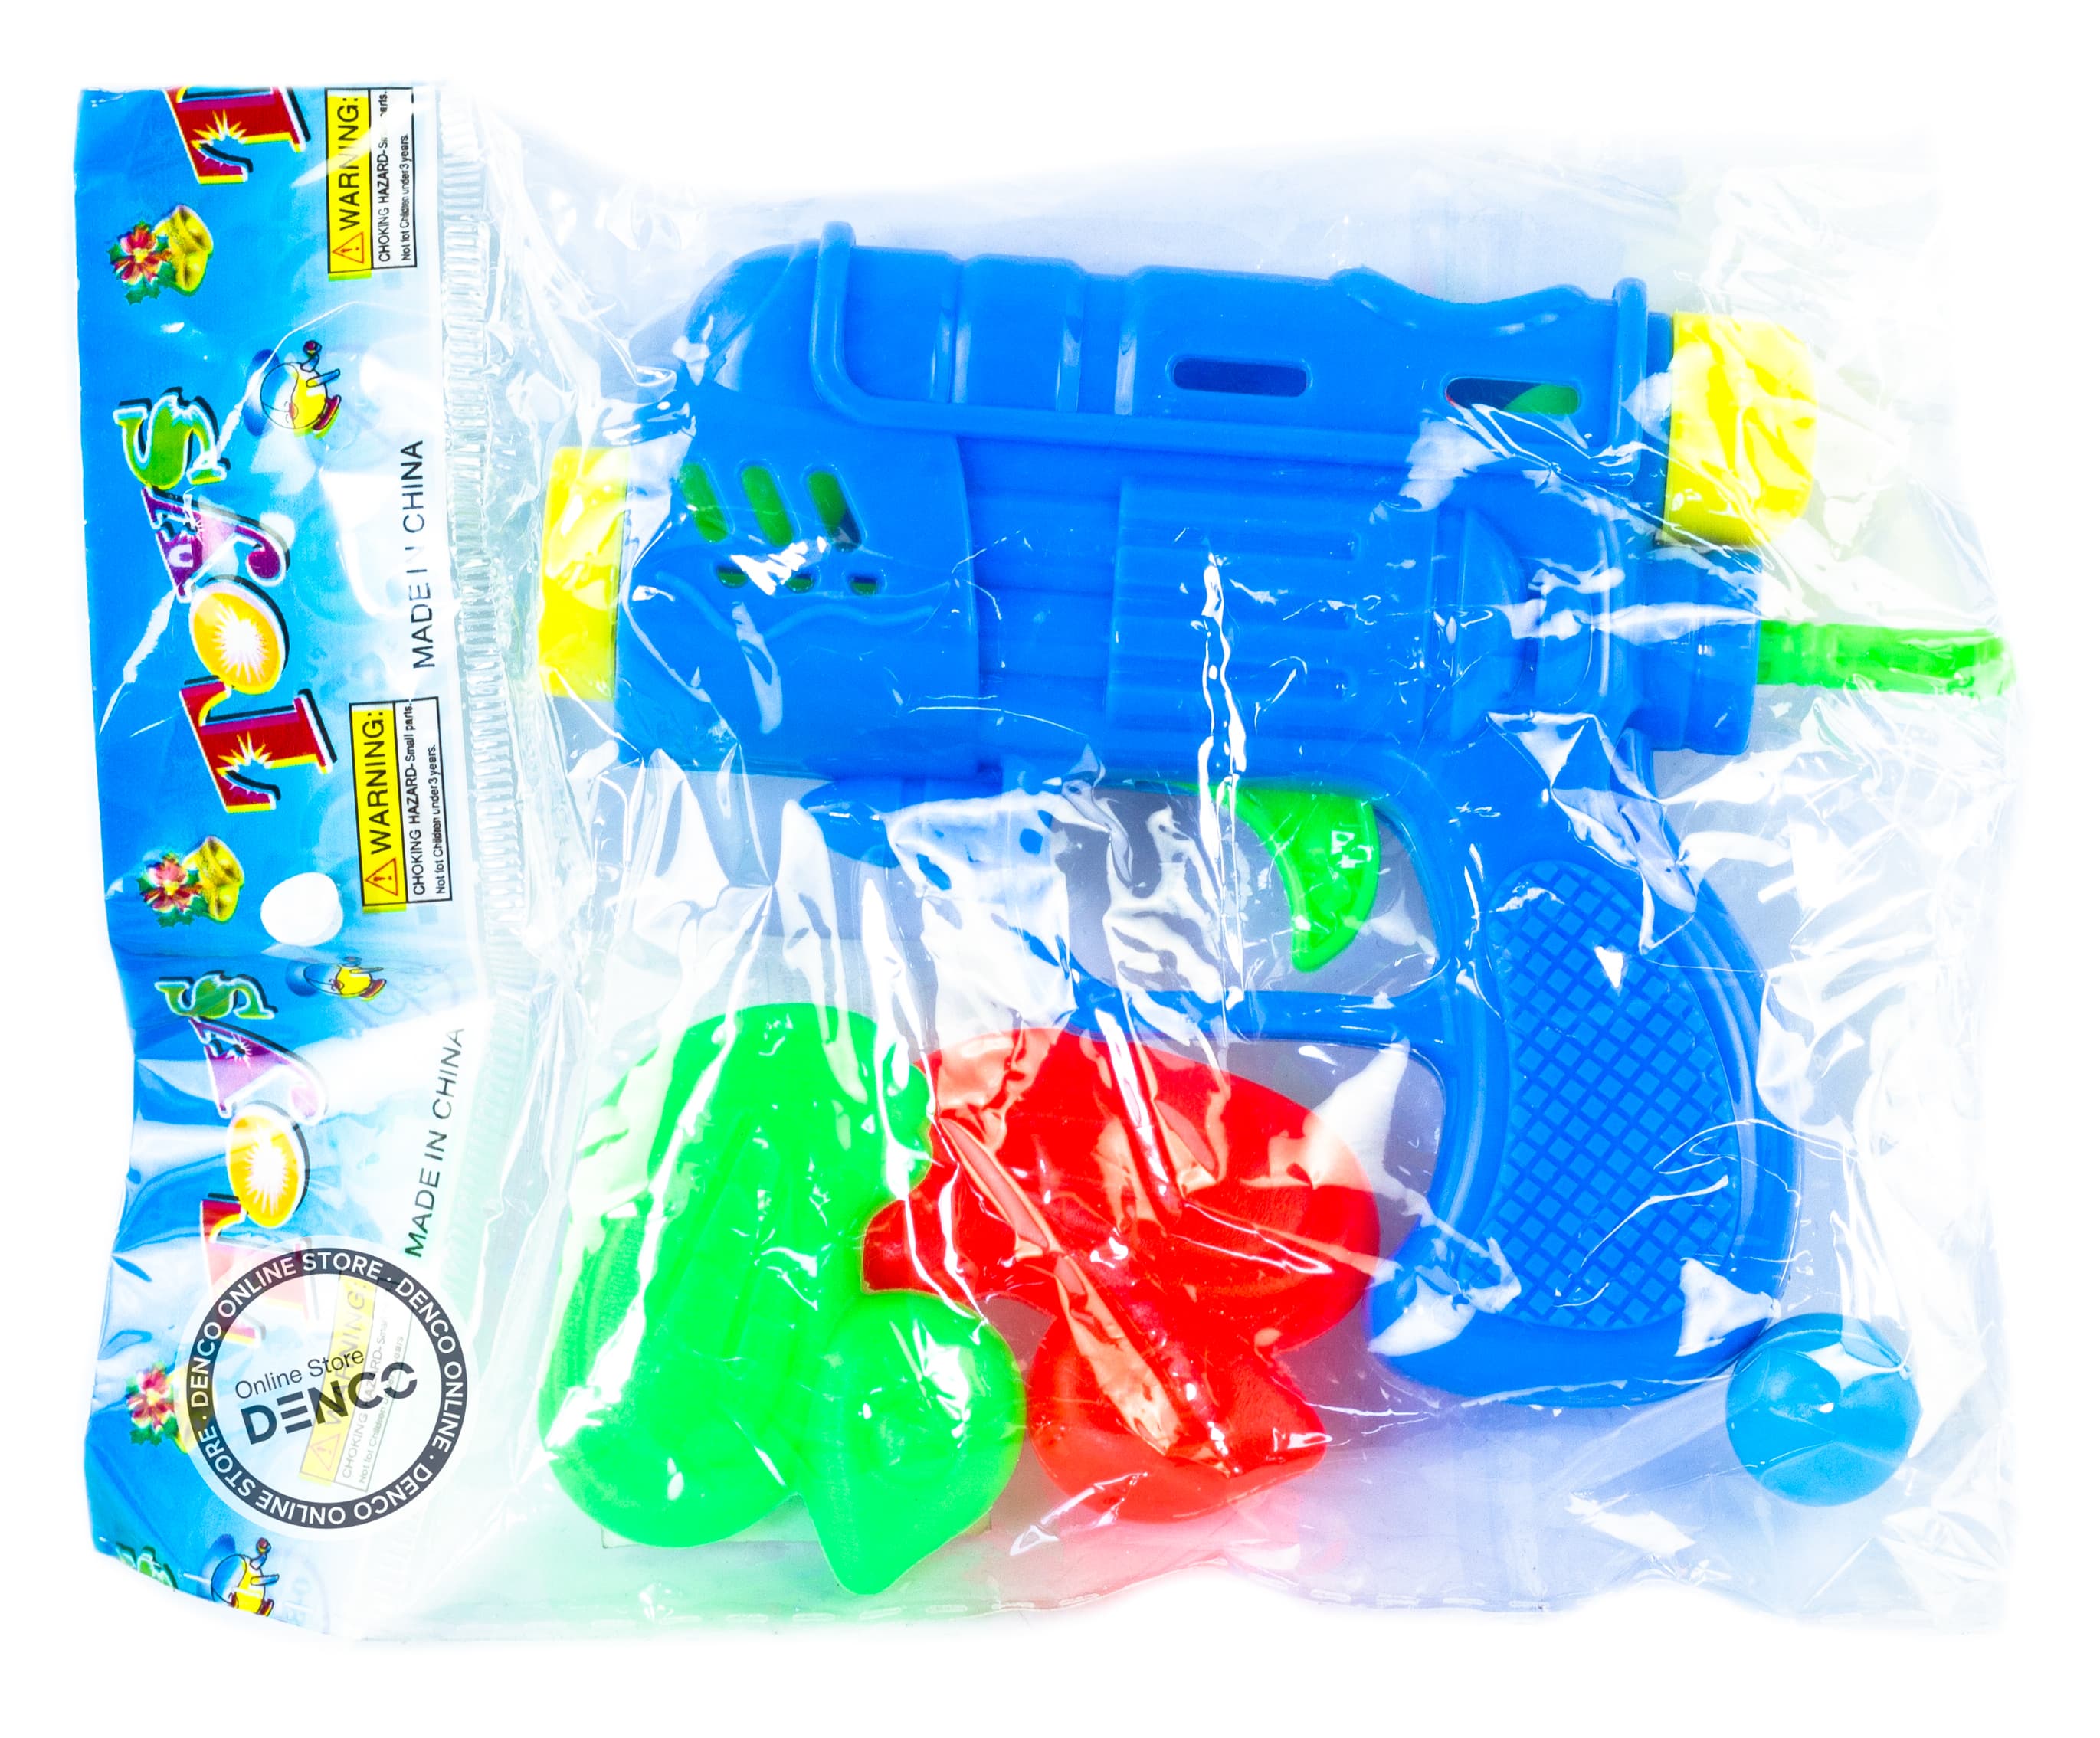 Игровой набор «Пистолет с шариками и уточками» 7105 / Микс